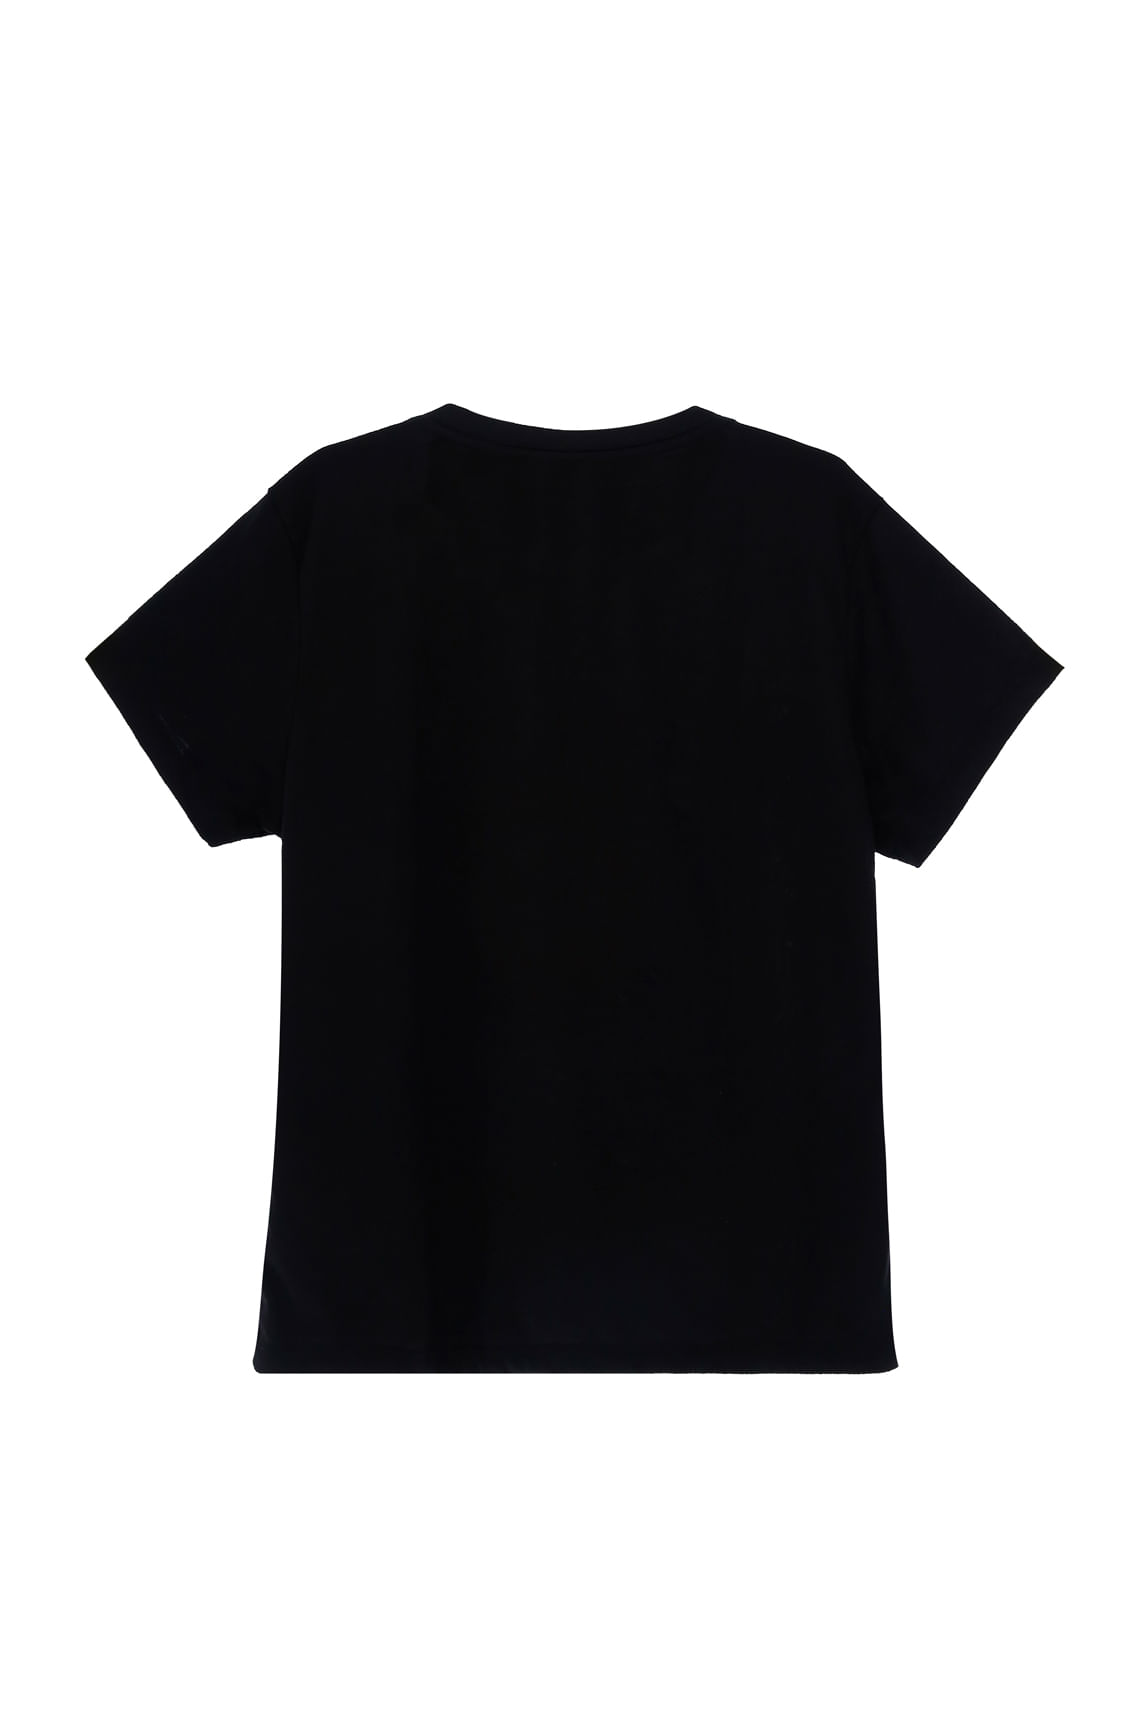 Camiseta negra para mujer, camiseta negra para mujer, camiseta café con  cuello en V para mujer, Negro 